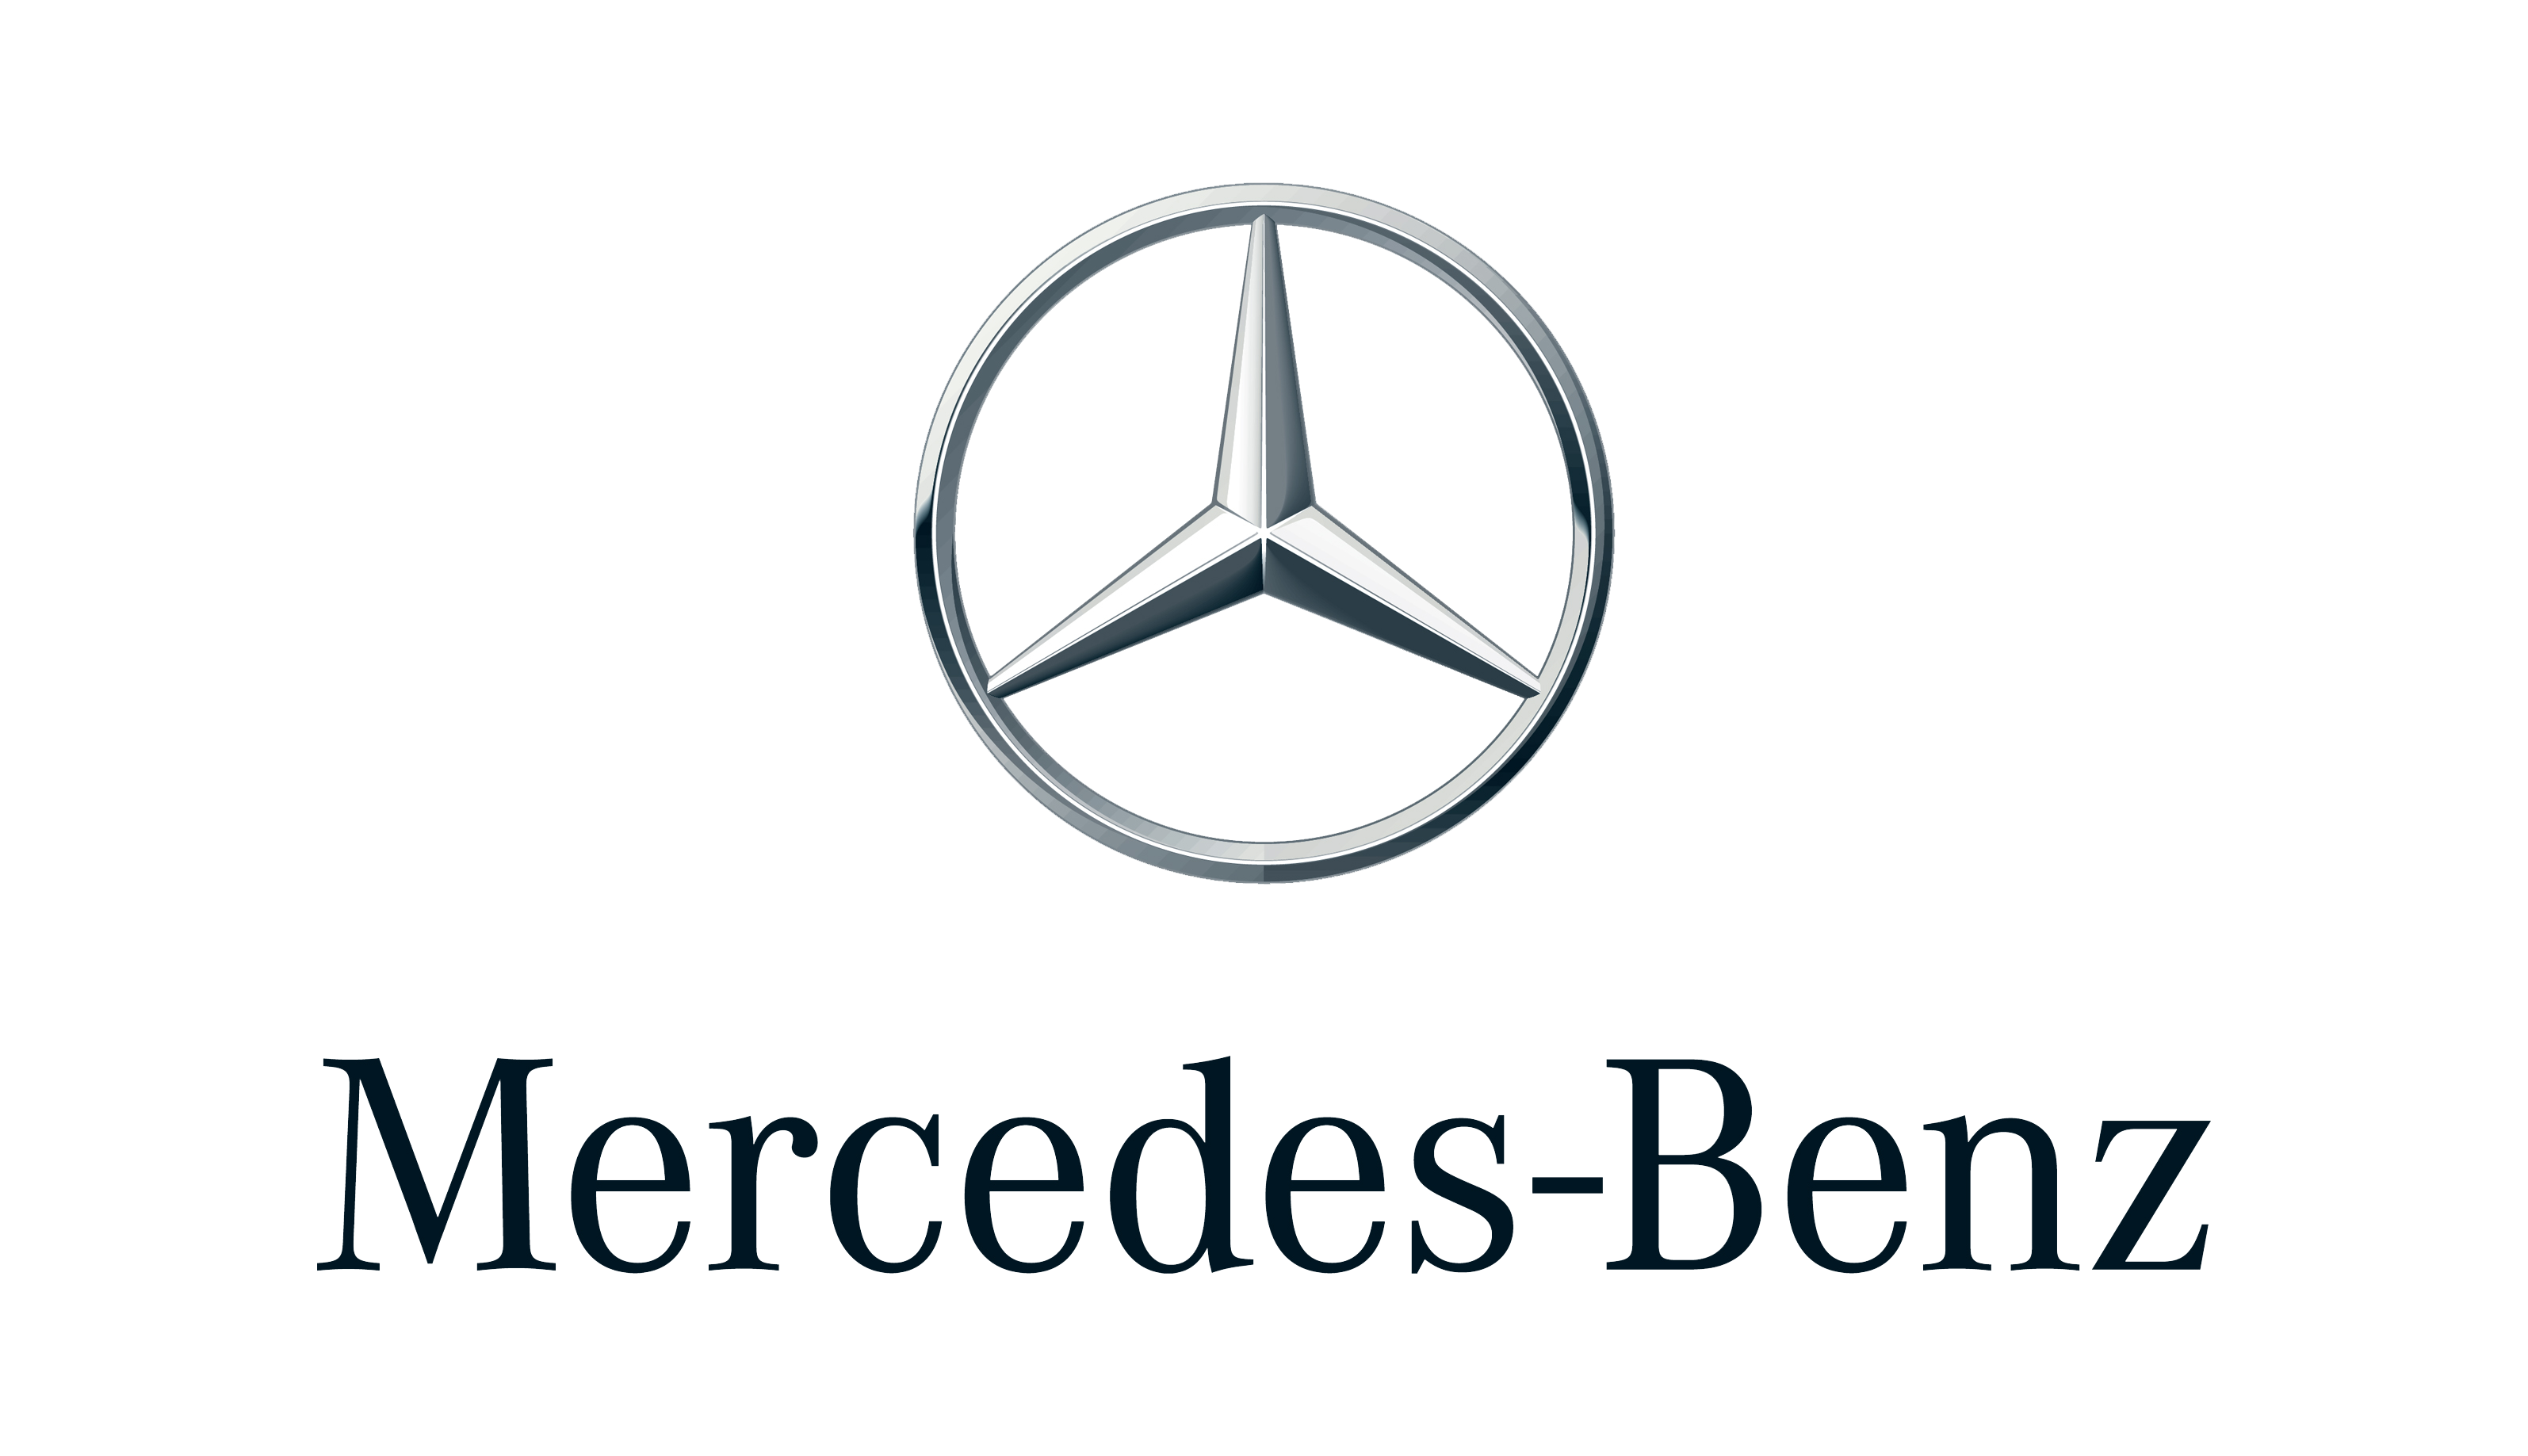 Mercedes Benz Hd PNG Image